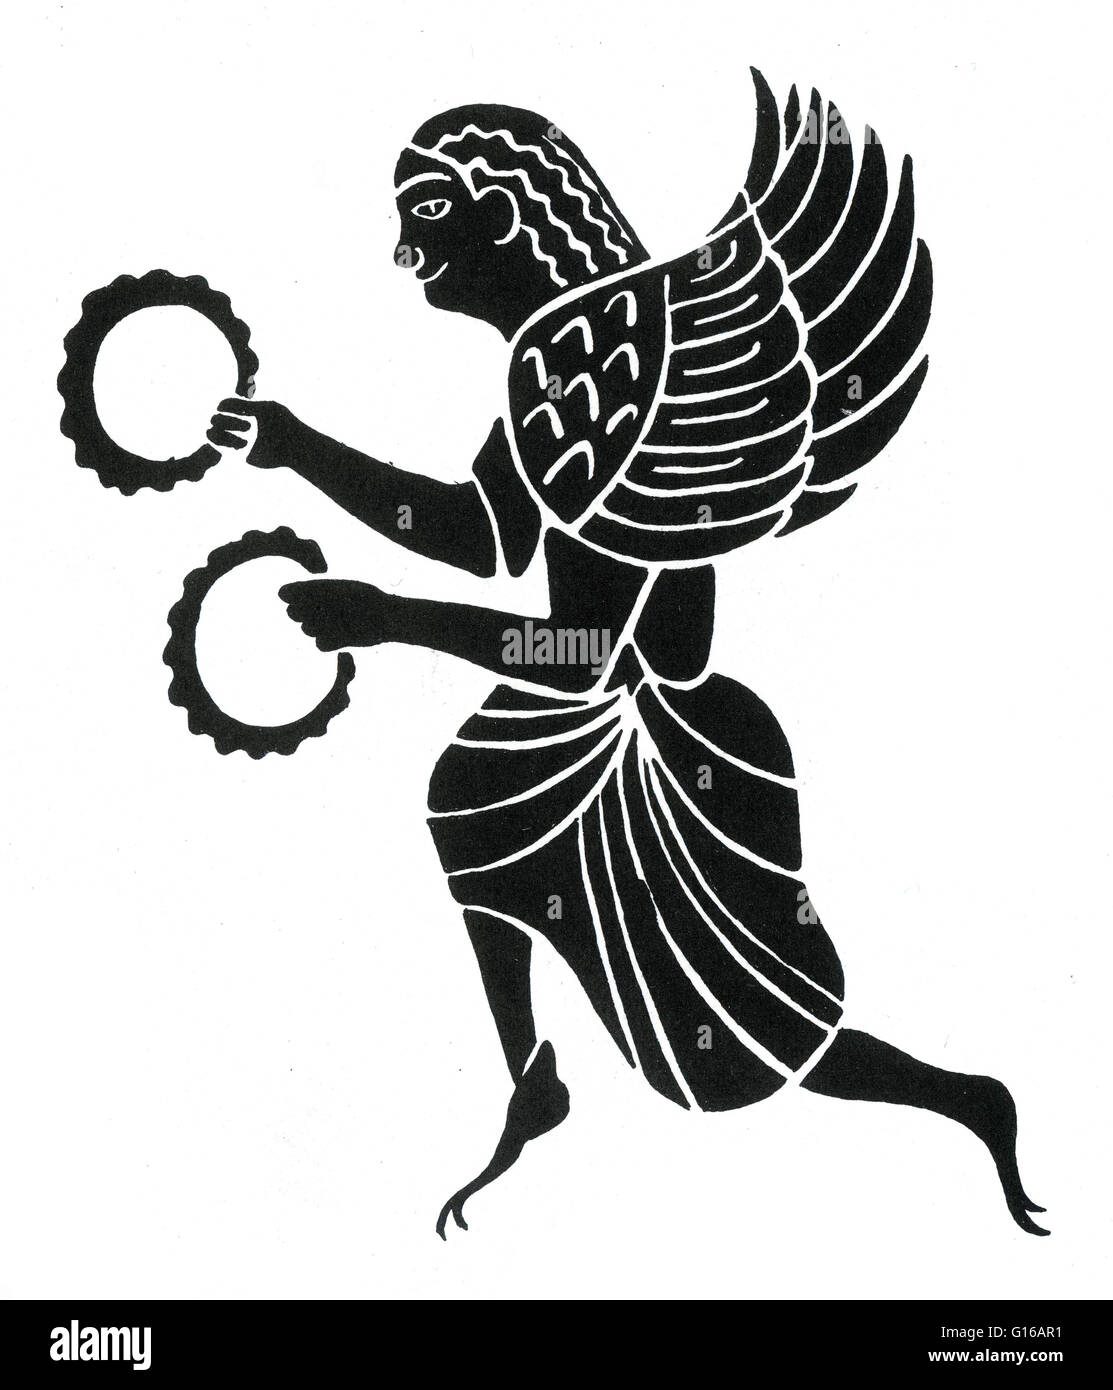 Antiken Griechenland, Harpyie, aus einer Amphora, 6. Jh.V.Chr. In früheren Versionen der griechischen Mythologie wurden Harpies als schöne, geflügelte Mädchen beschrieben. Später sie wurden geflügelte Monster mit dem Gesicht eine hässliche alte Frau und mit krummen, scharfen Krallen ausgestattet. O Stockfoto